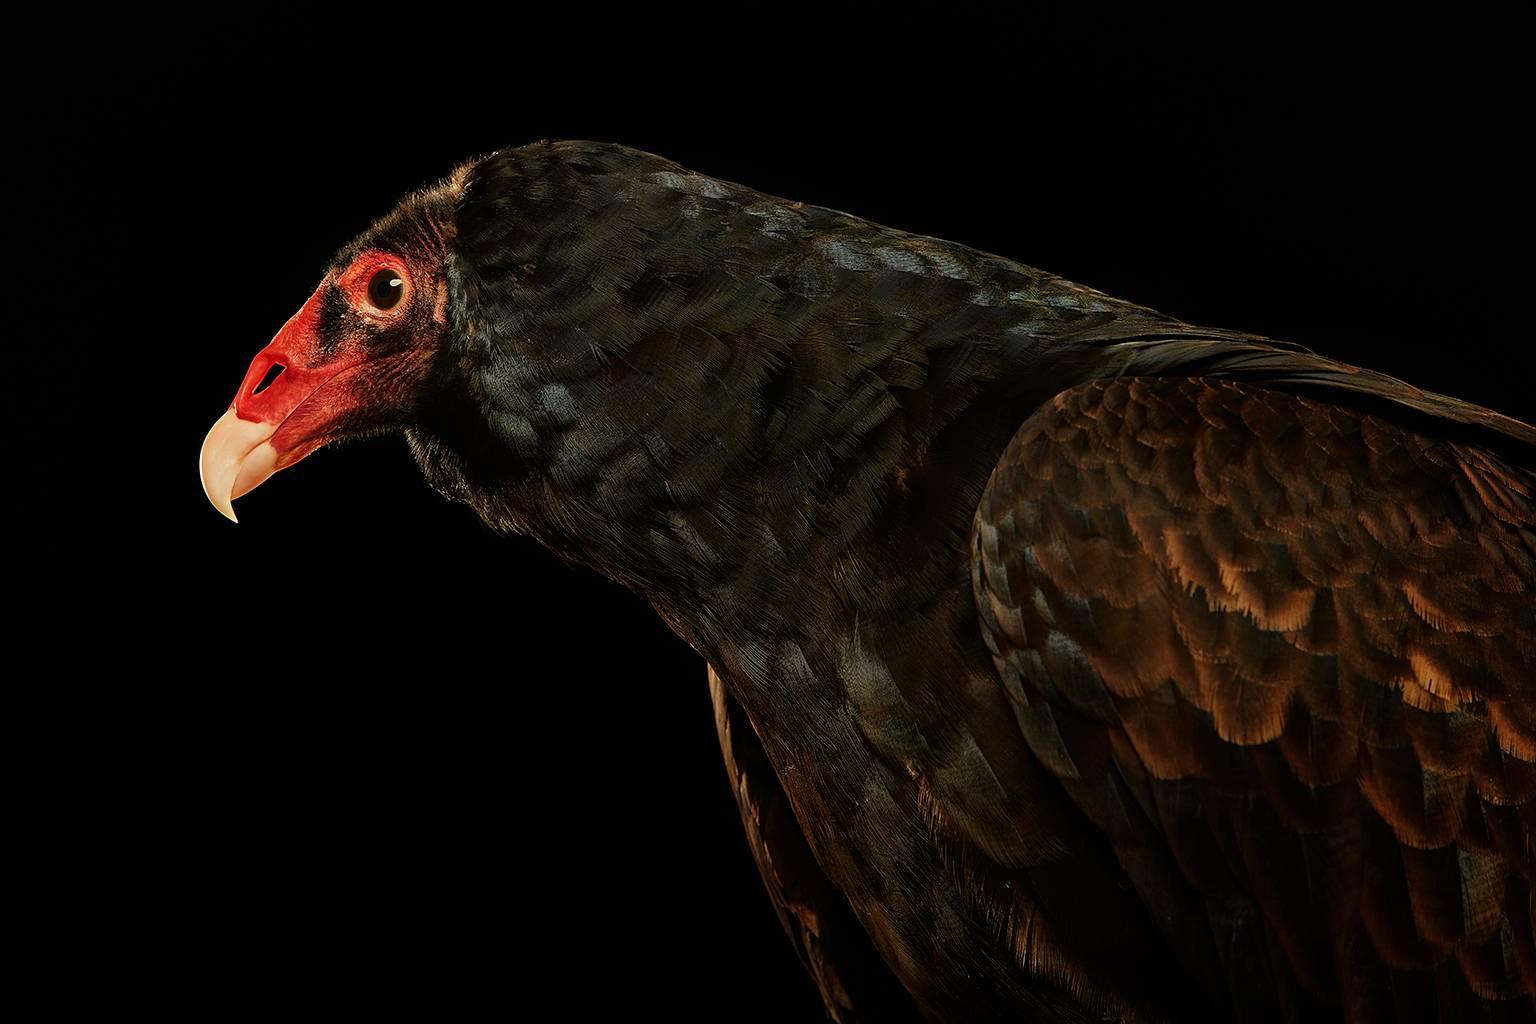 Chris Gordaneer Color Photograph - Birds of Prey - Turkey Vulture No. 9